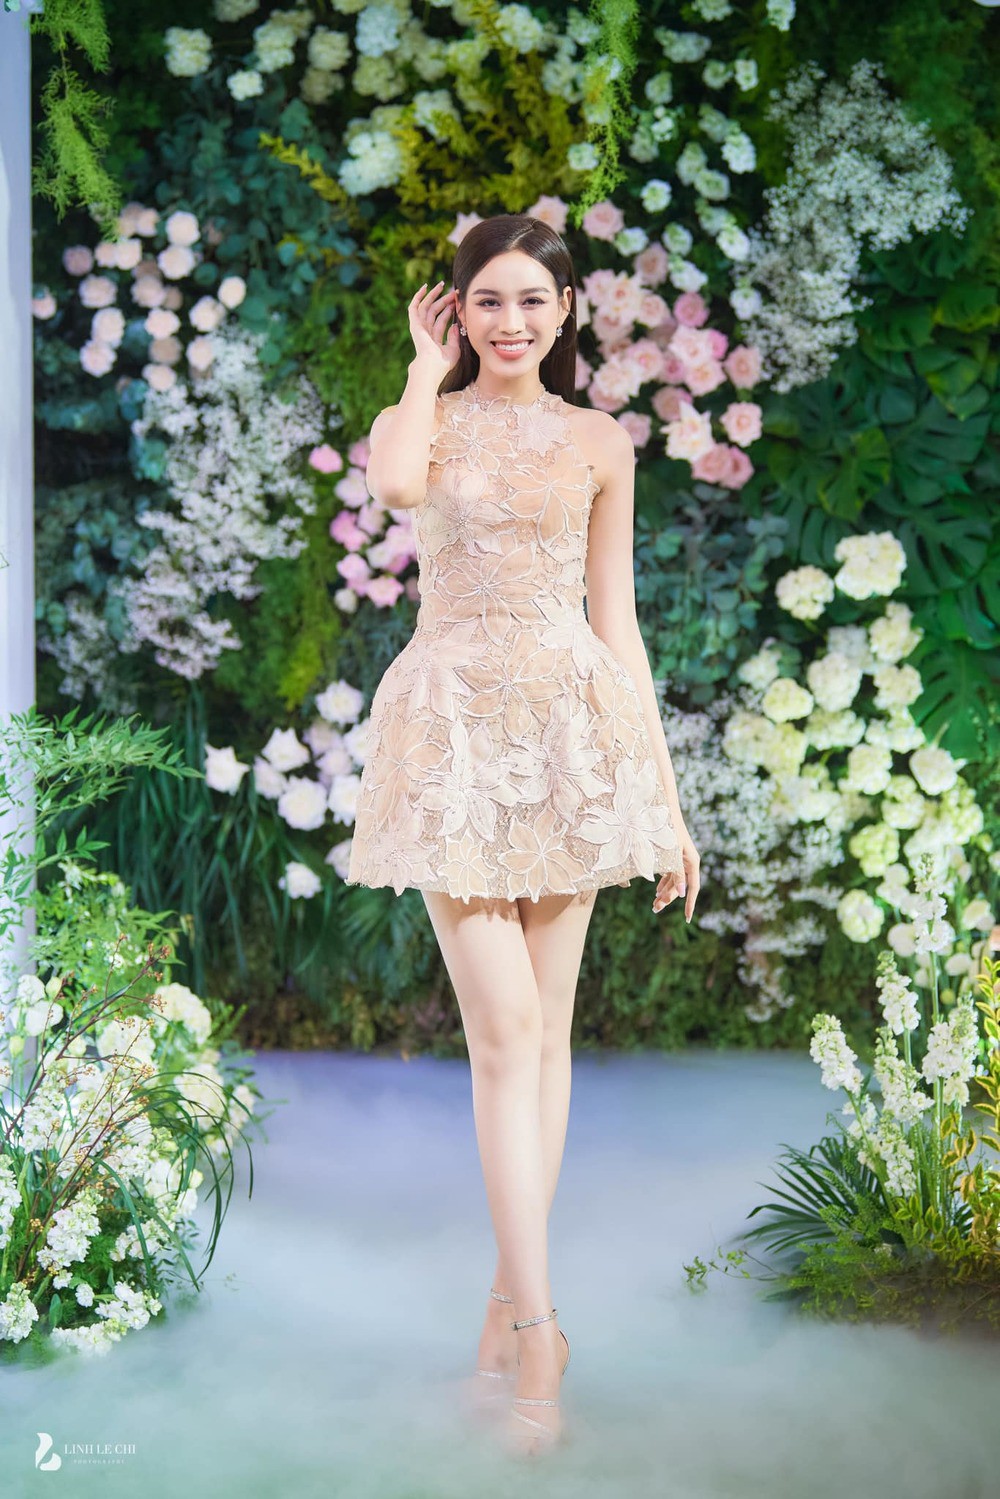 Đỗ Hà nổi bật trong đám cưới Đỗ Mỹ Linh với kiểu váy màu nude dáng ngắn sang trọng.